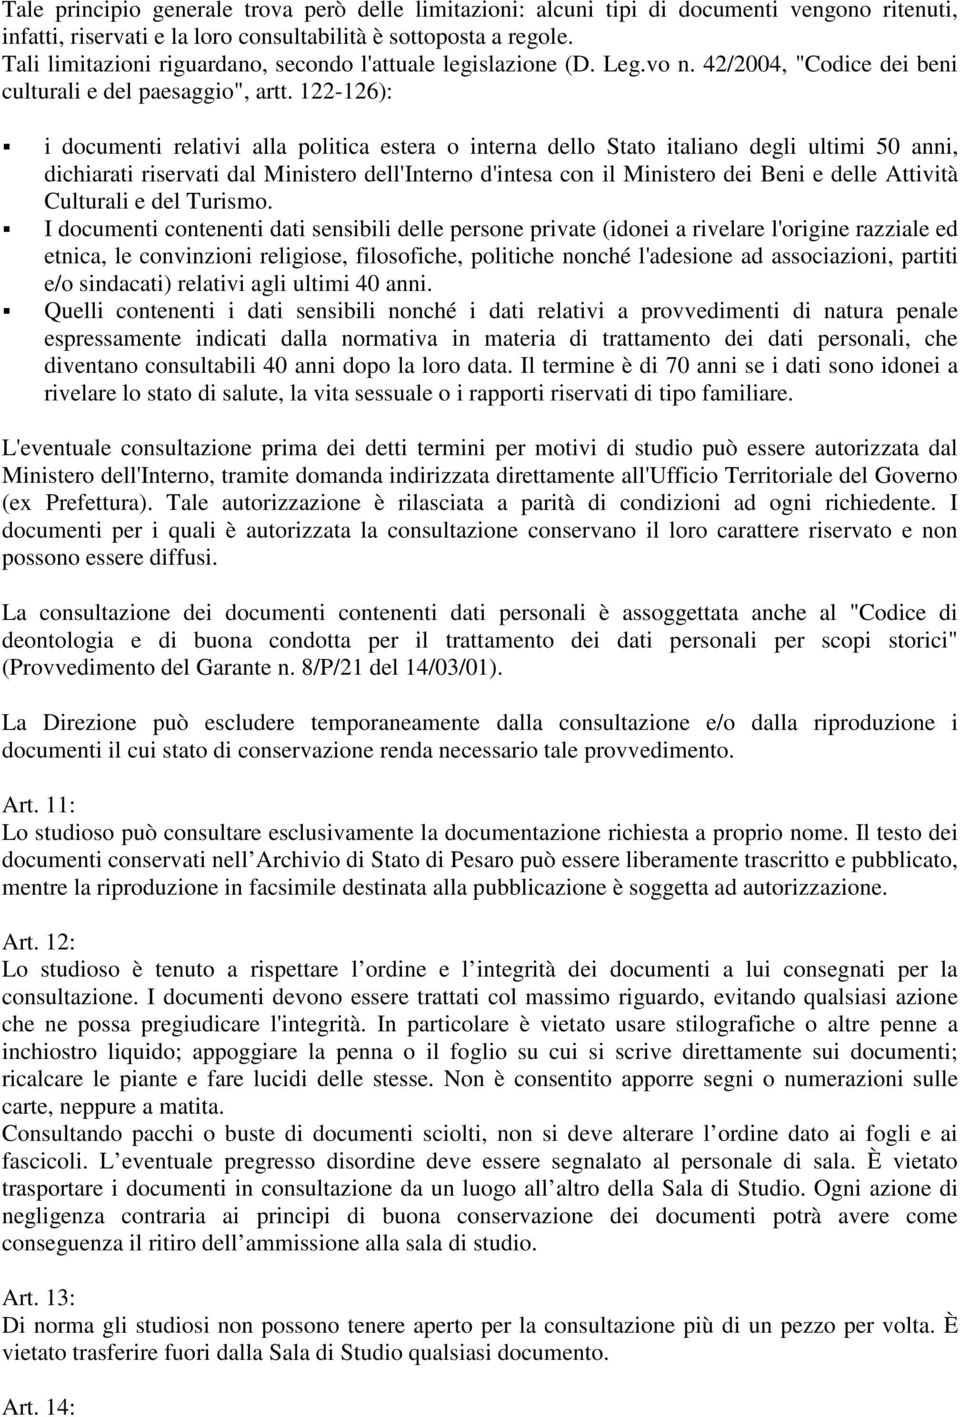 122-126): i documenti relativi alla politica estera o interna dello Stato italiano degli ultimi 50 anni, dichiarati riservati dal Ministero dell'interno d'intesa con il Ministero dei Beni e delle